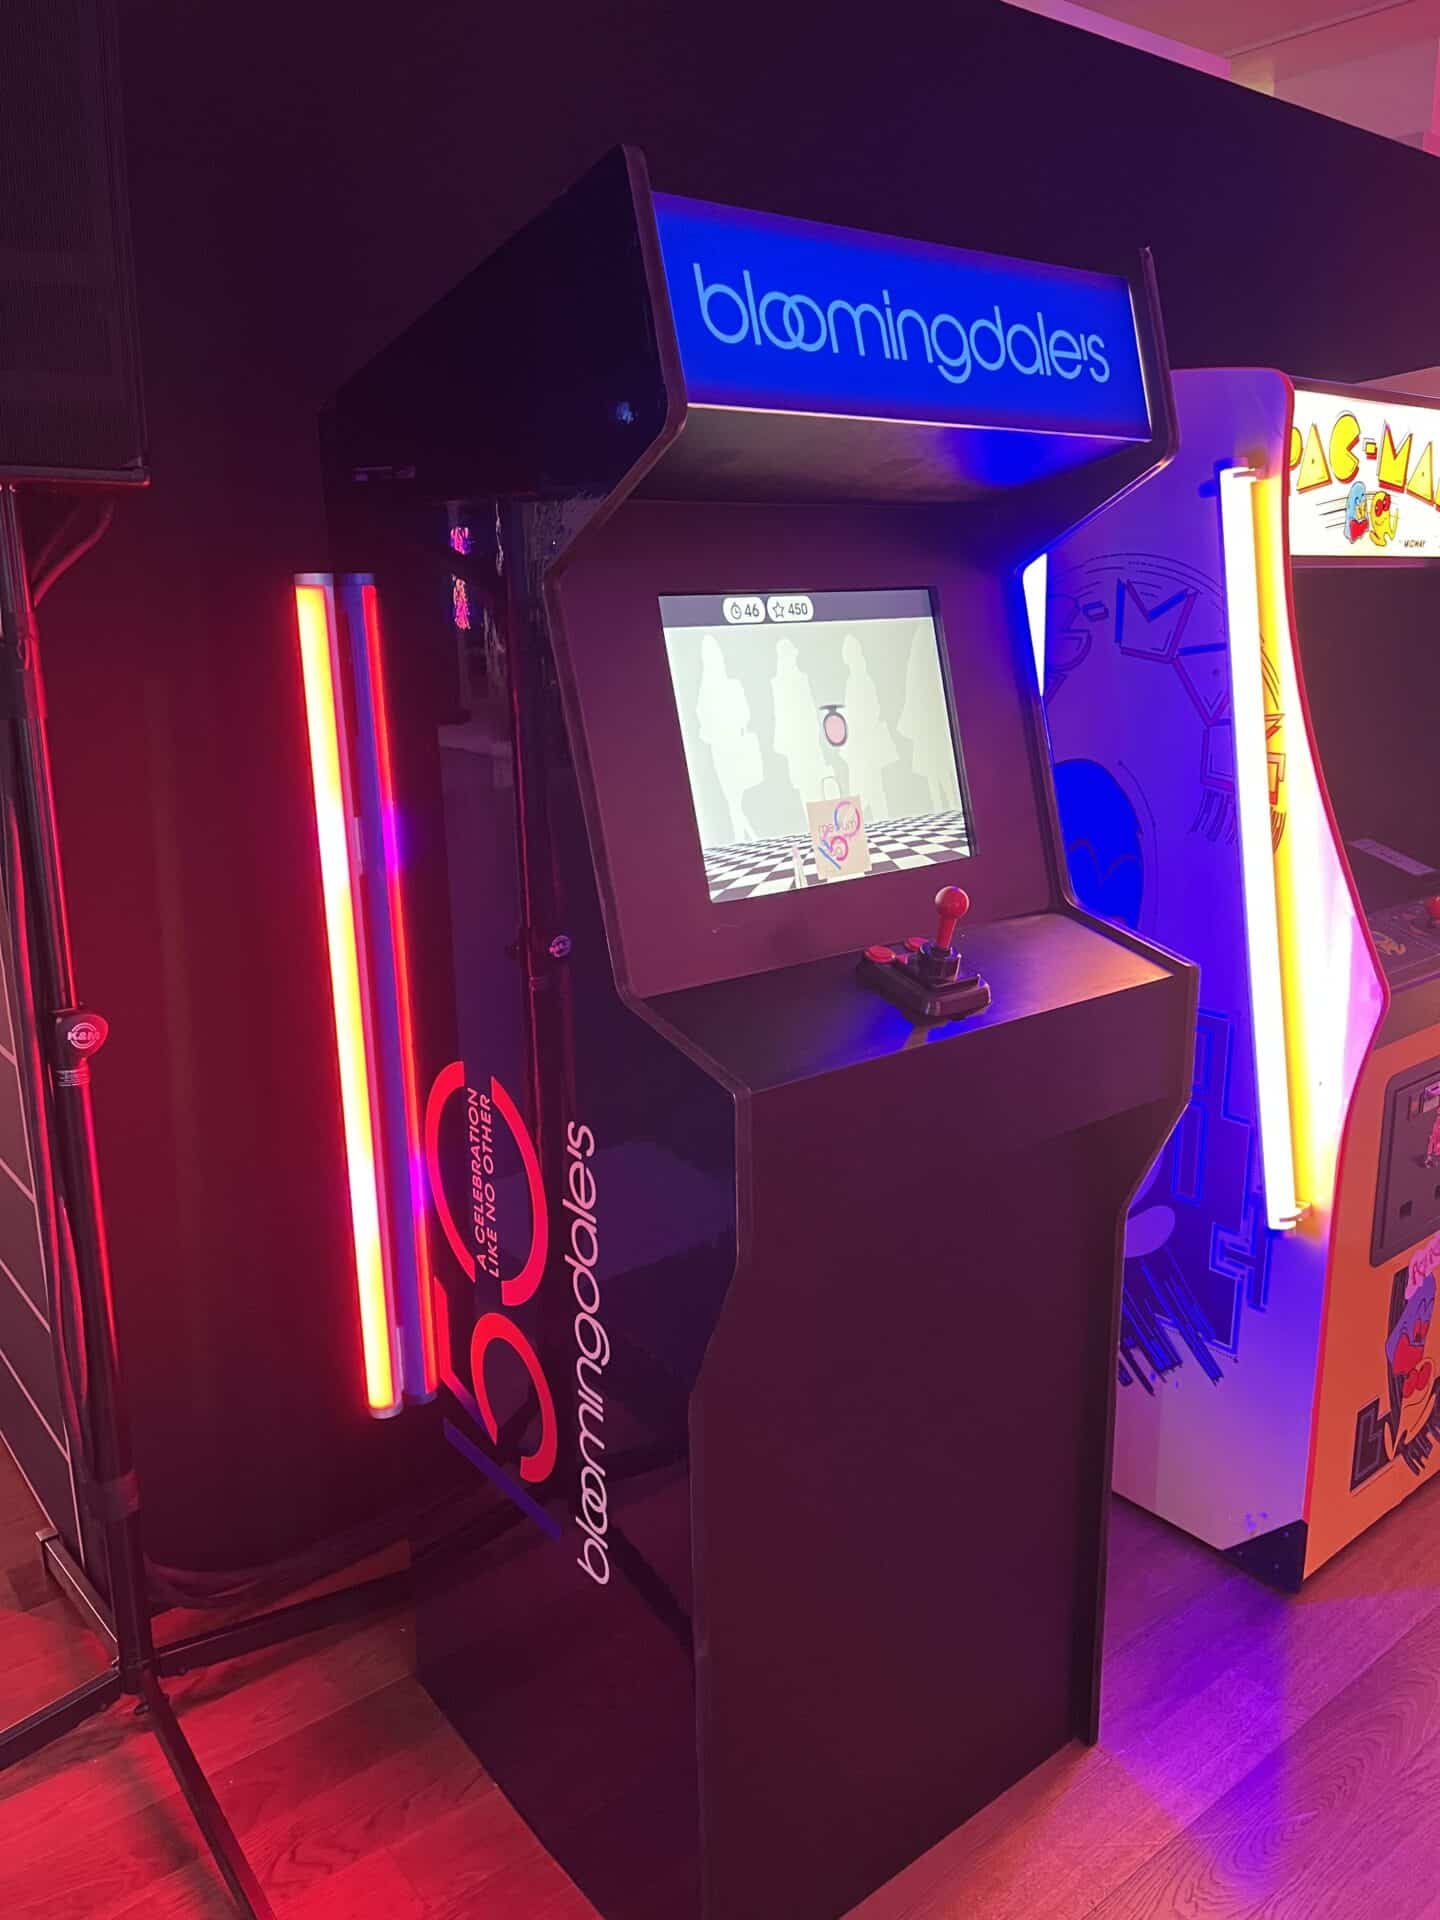 Bloomingdale’s Arcade Game 